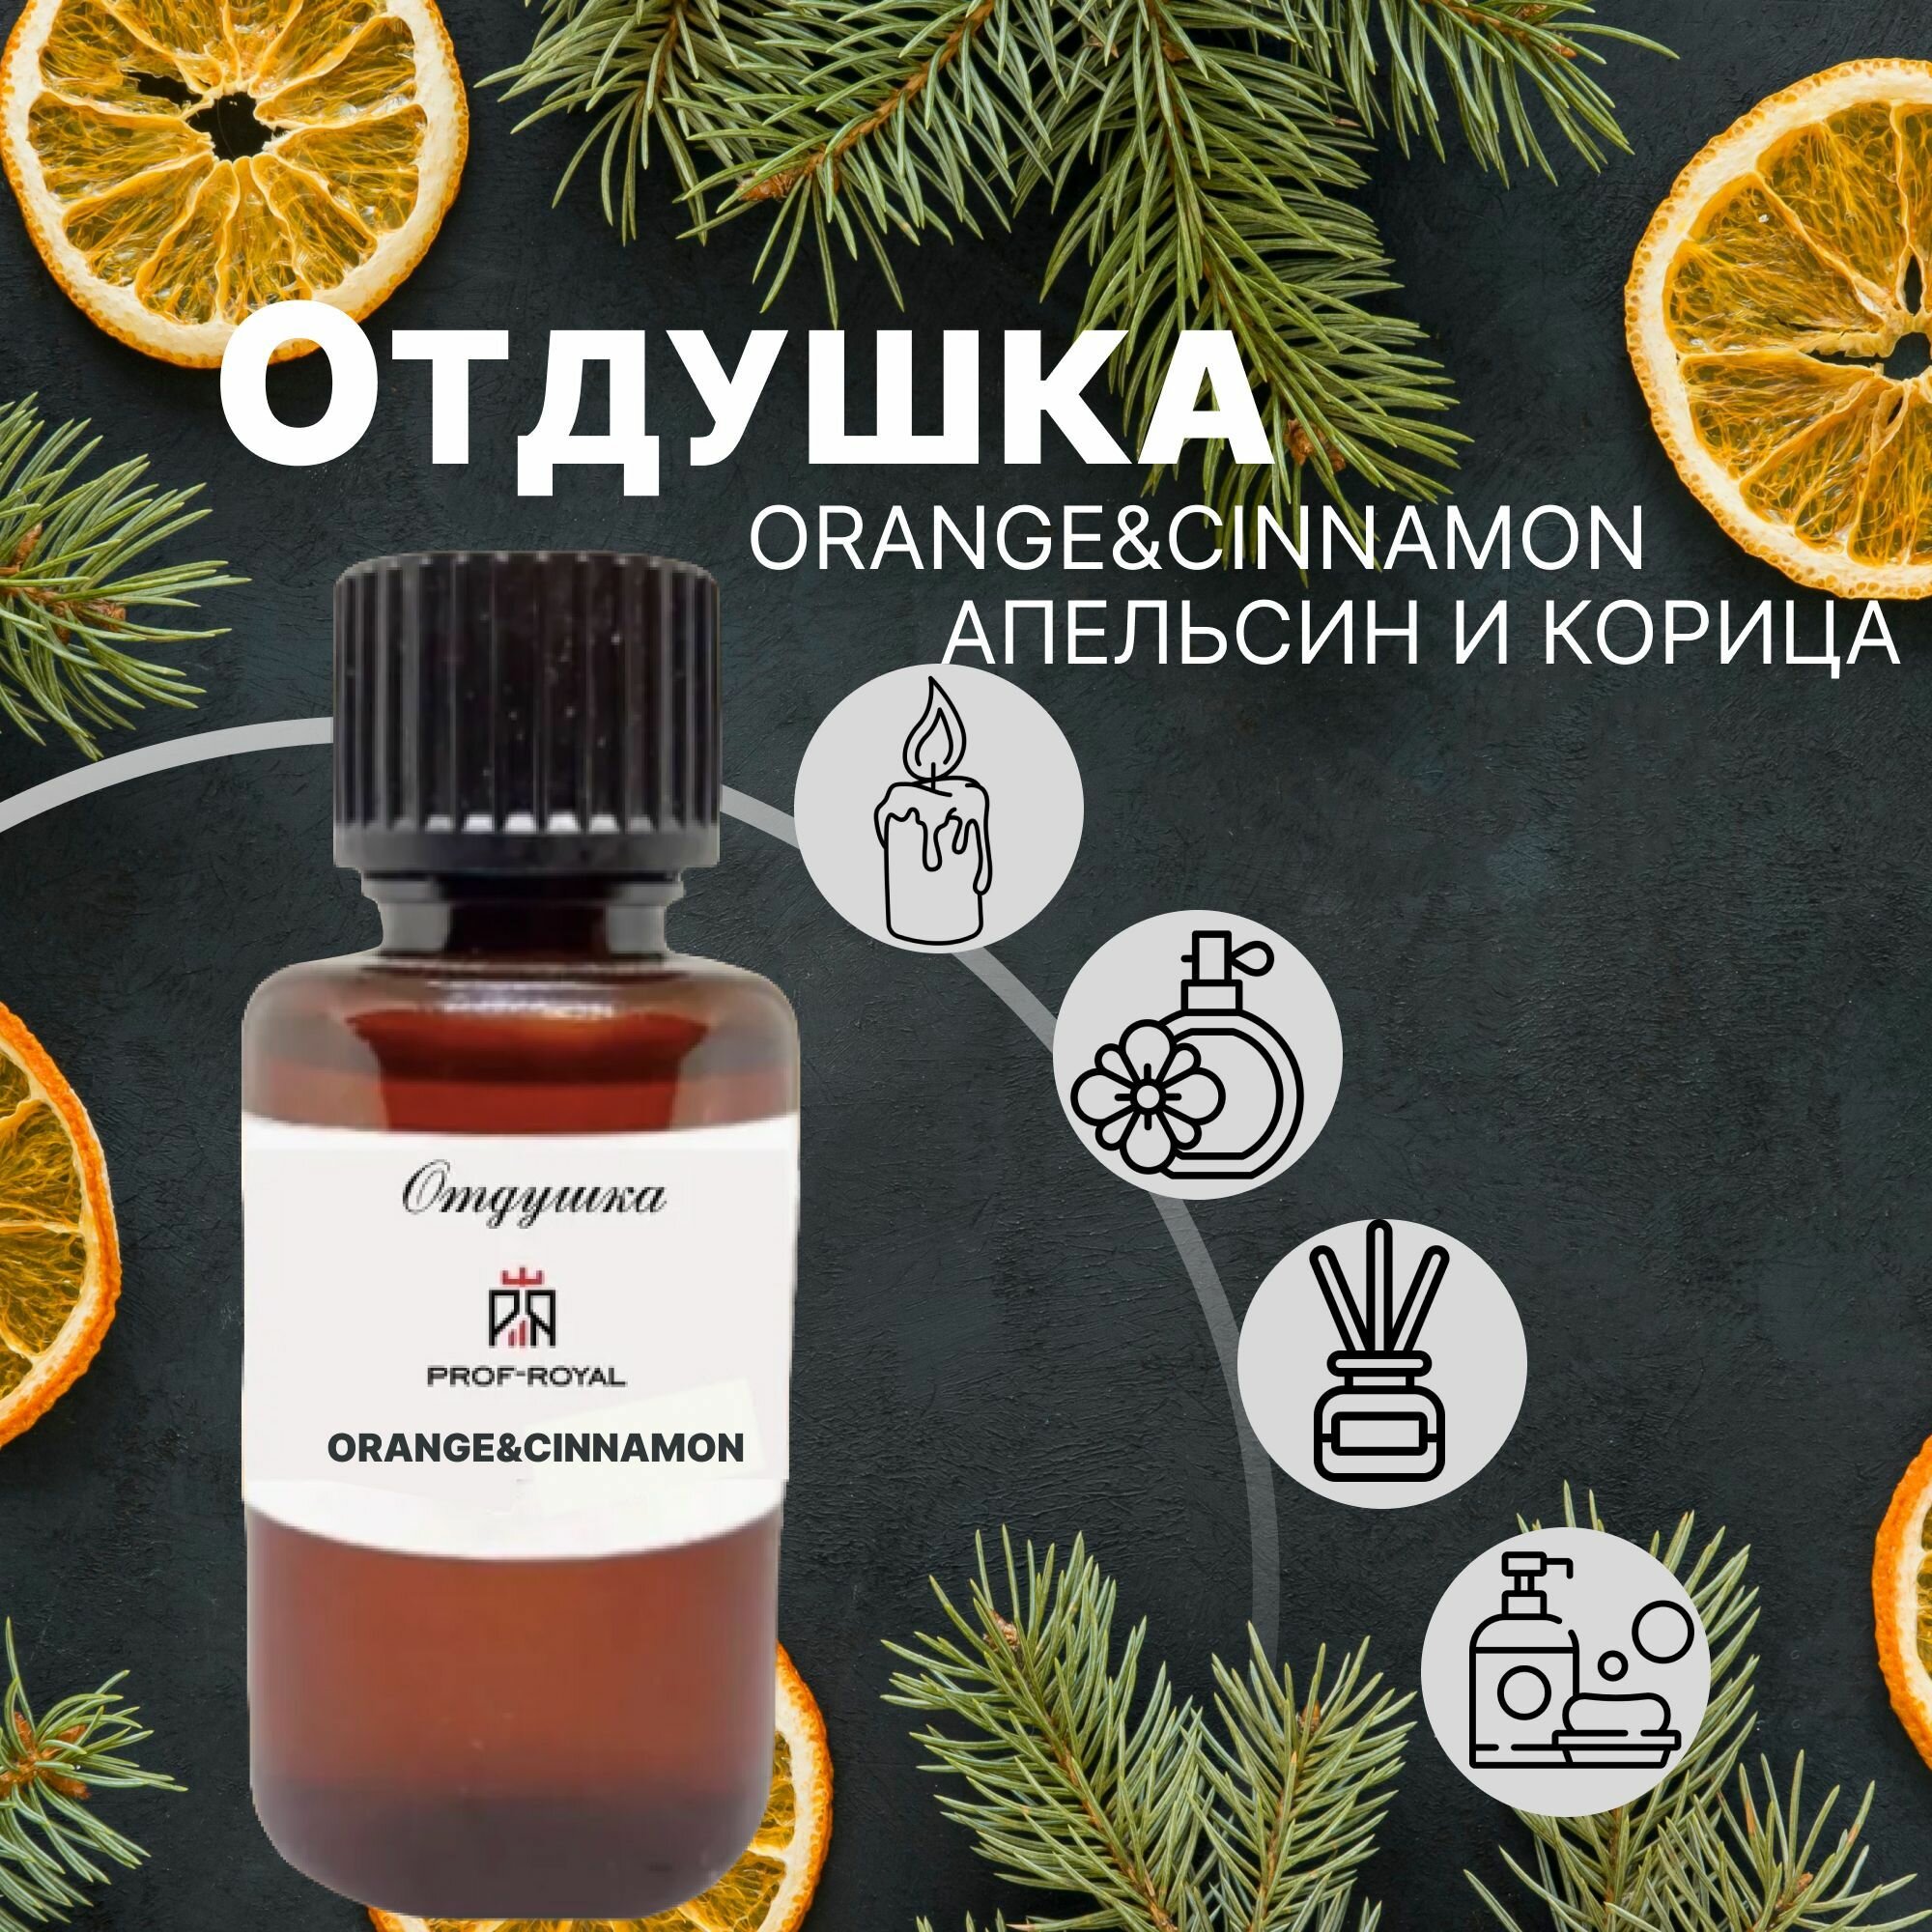 Prof-Royal отдушка парфюмерная Orange and cinnamon для духов, свечей, мыла и диффузоров, 10 мл